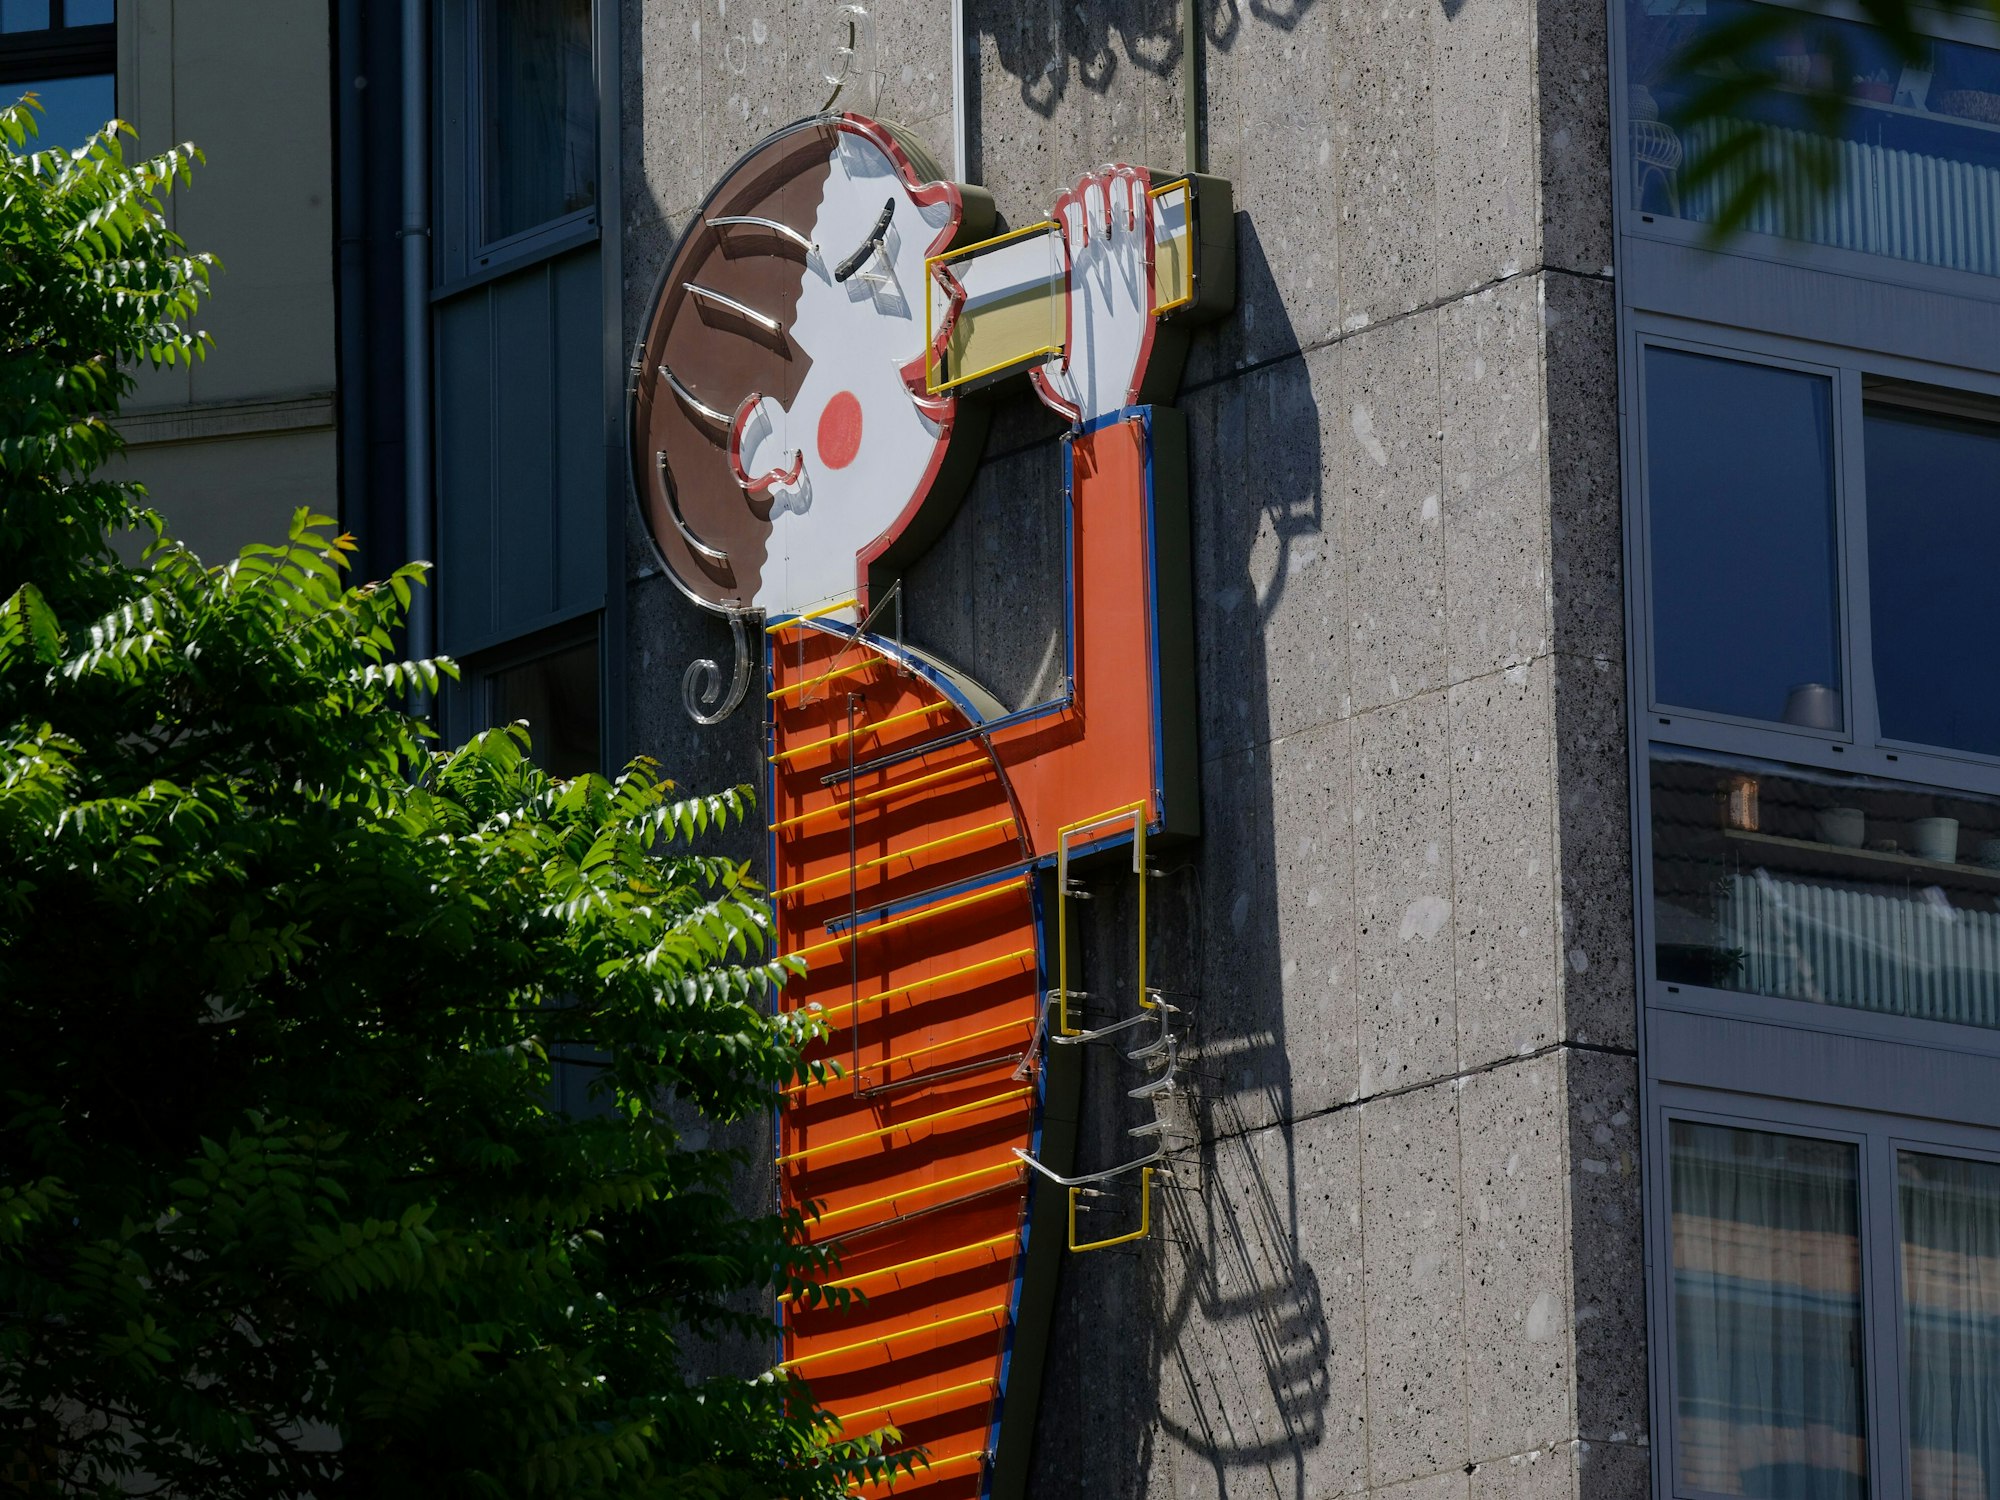 Eine Werbetafel der Kölsch-Brauerei Reissdorf an einem Haus zeigt eine Figur, die Kölsch trinkt.